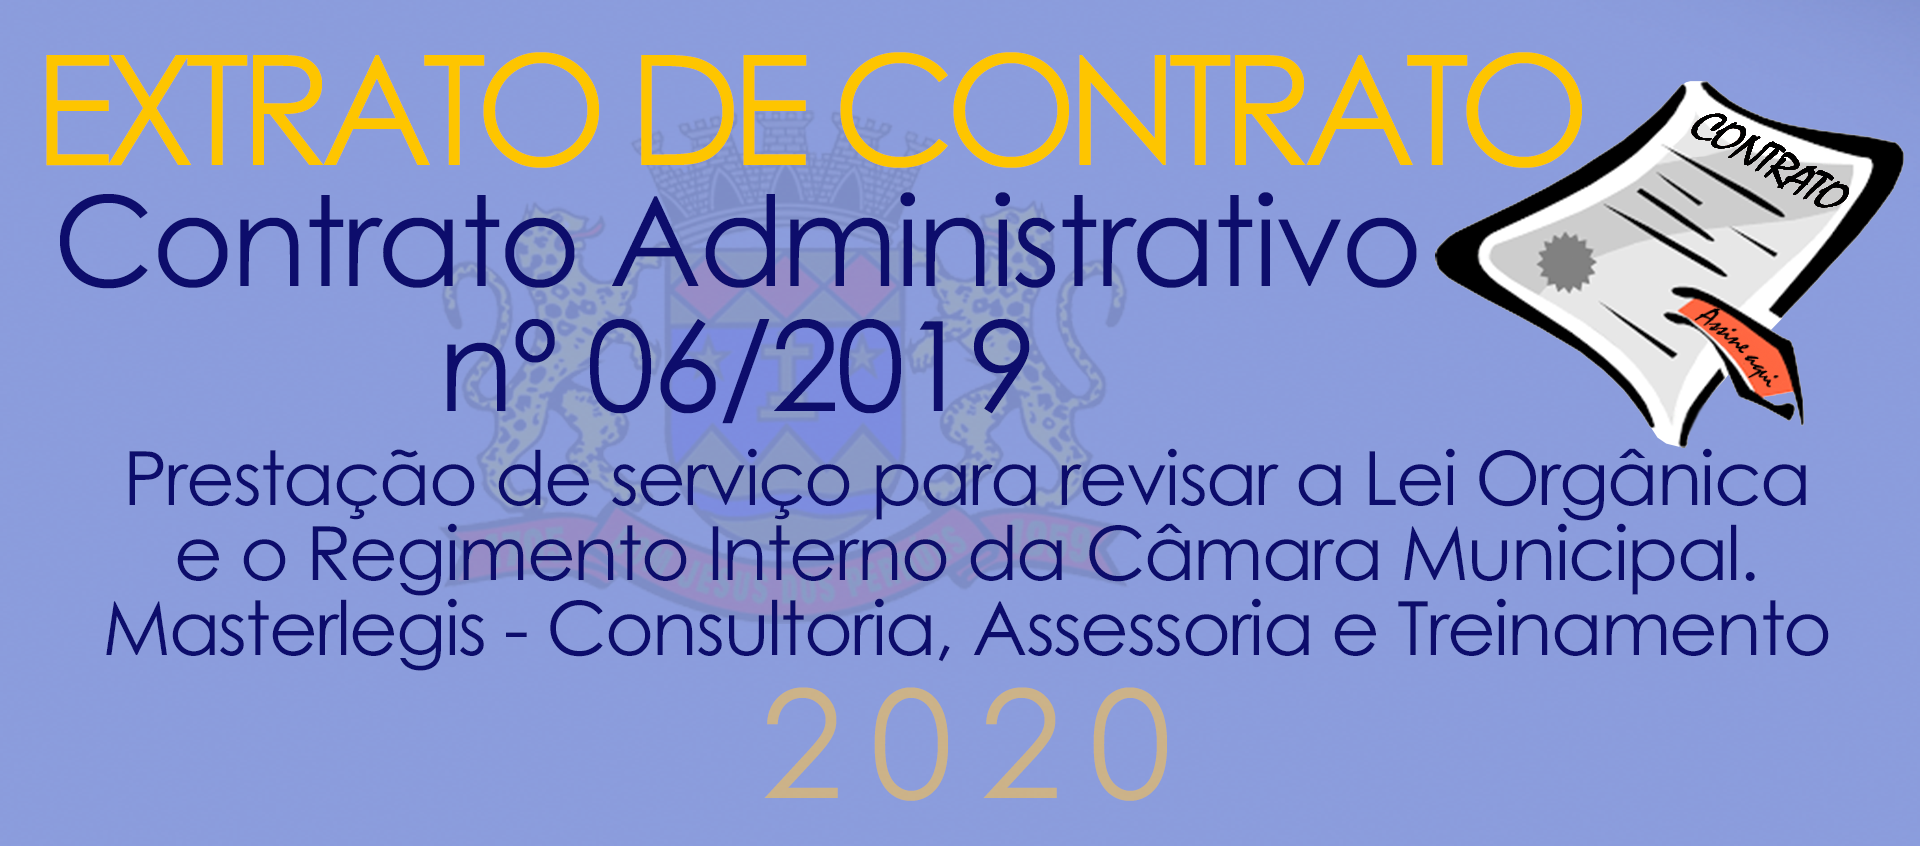 Extrato de Contrato 06/2020 - Reforma da LOM e RI da Câmara